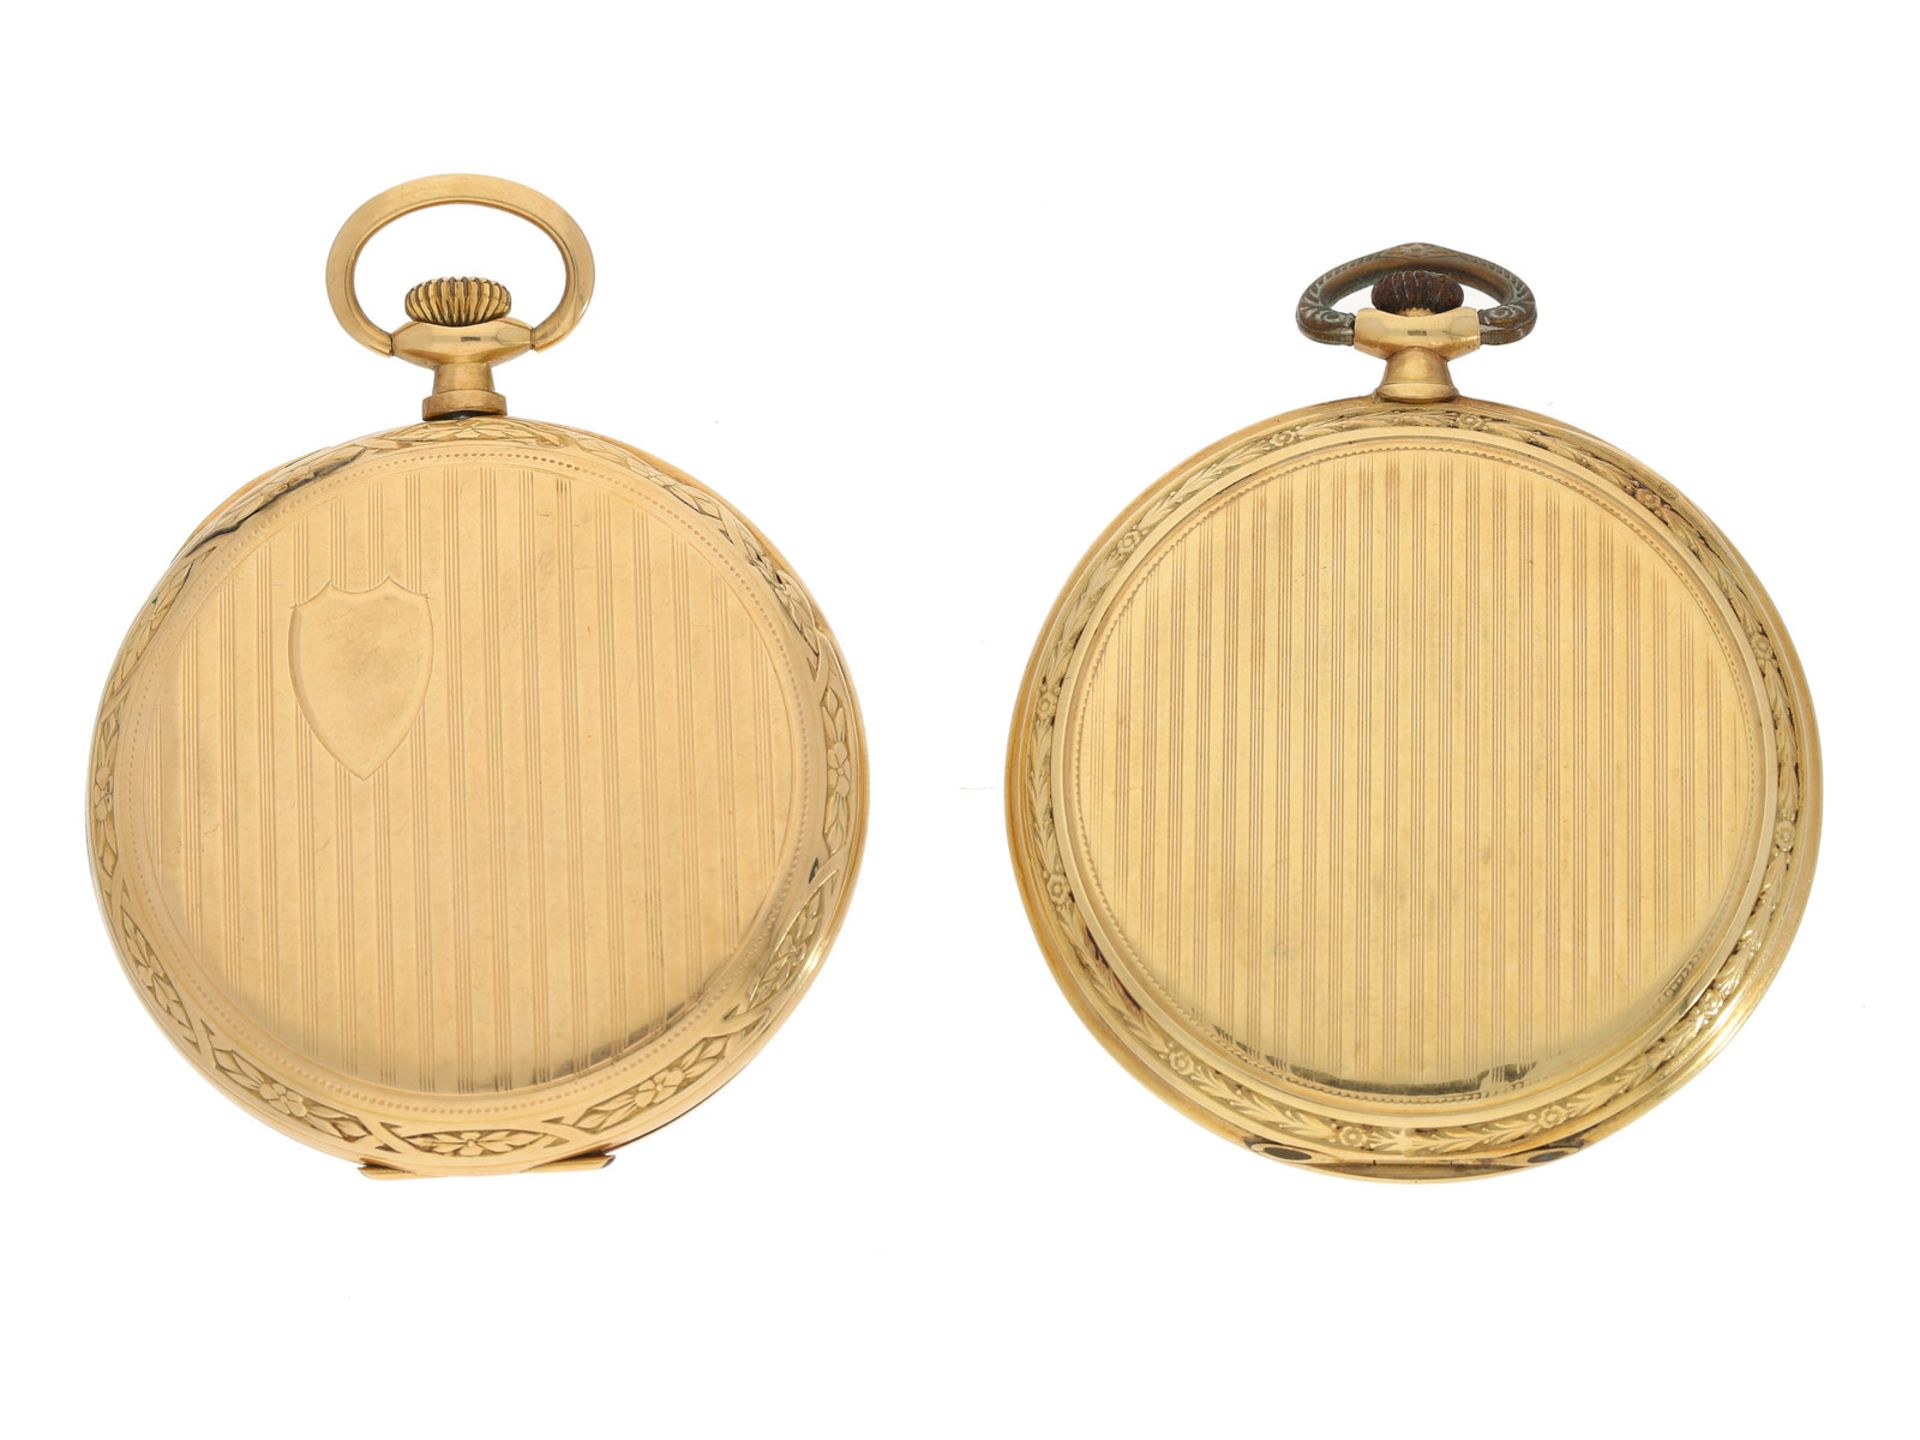 Taschenuhr: 2 goldene Frackuhren aus der Zeit des Art déco, beide Uhren bezeichnet "Chronometer"1. - Bild 2 aus 3